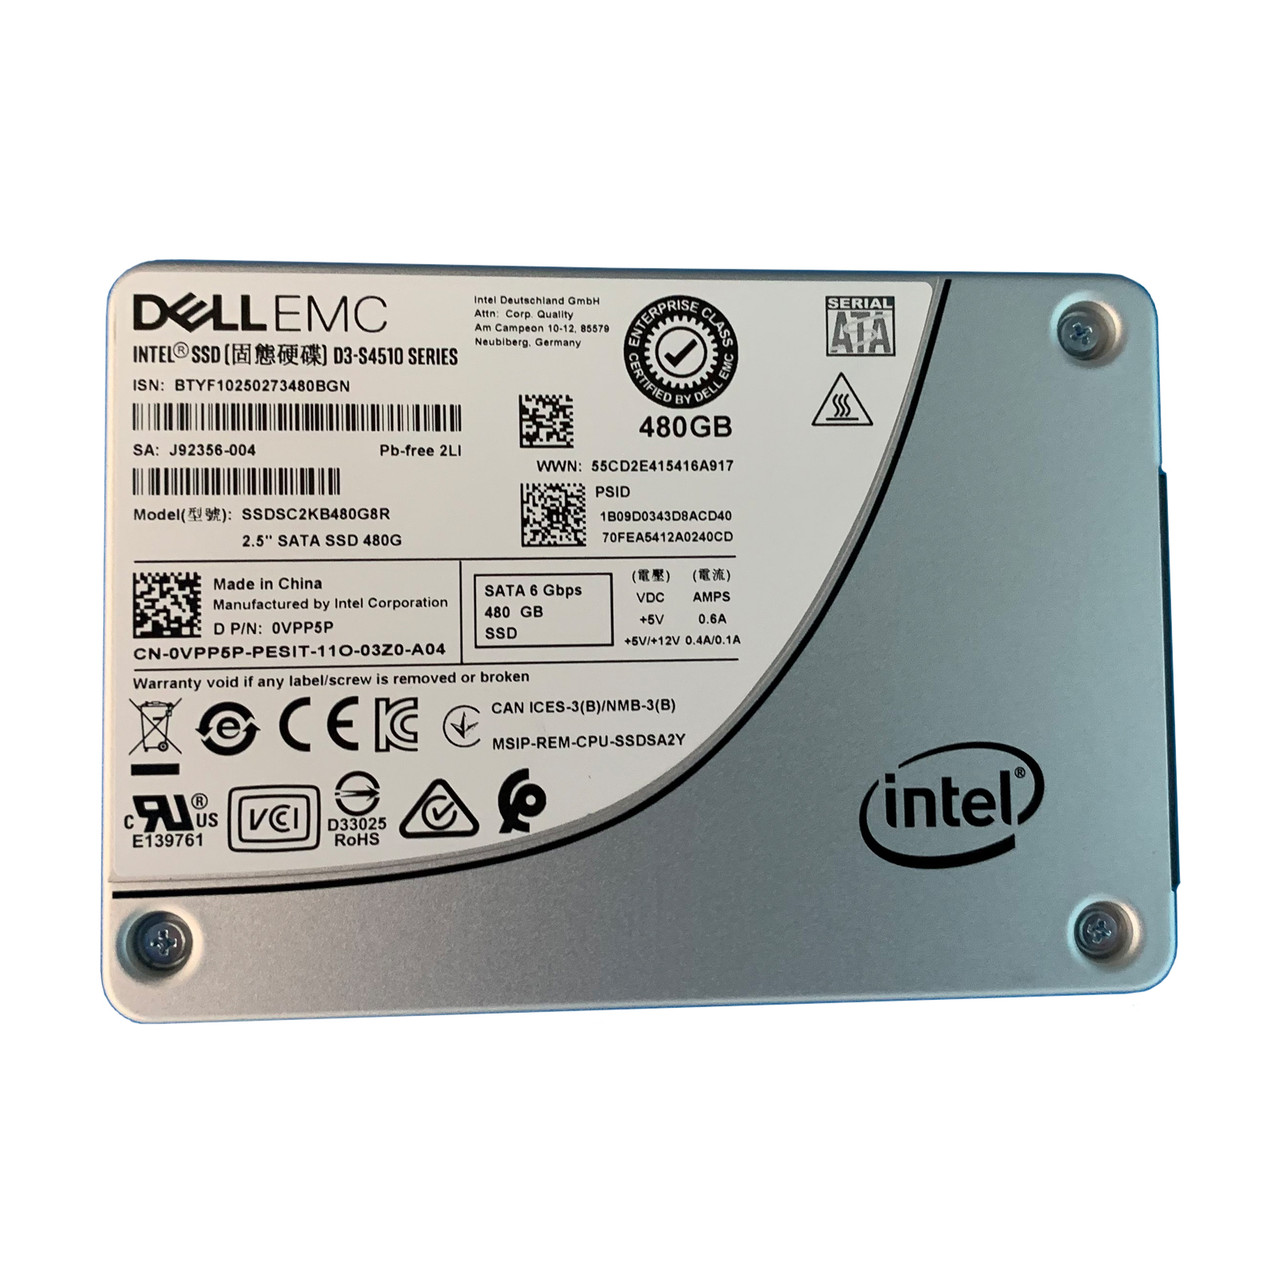 ΔΙΣΚΟΣ SSD DELL EMC D3-S4510 480GB (REFURBISHED)